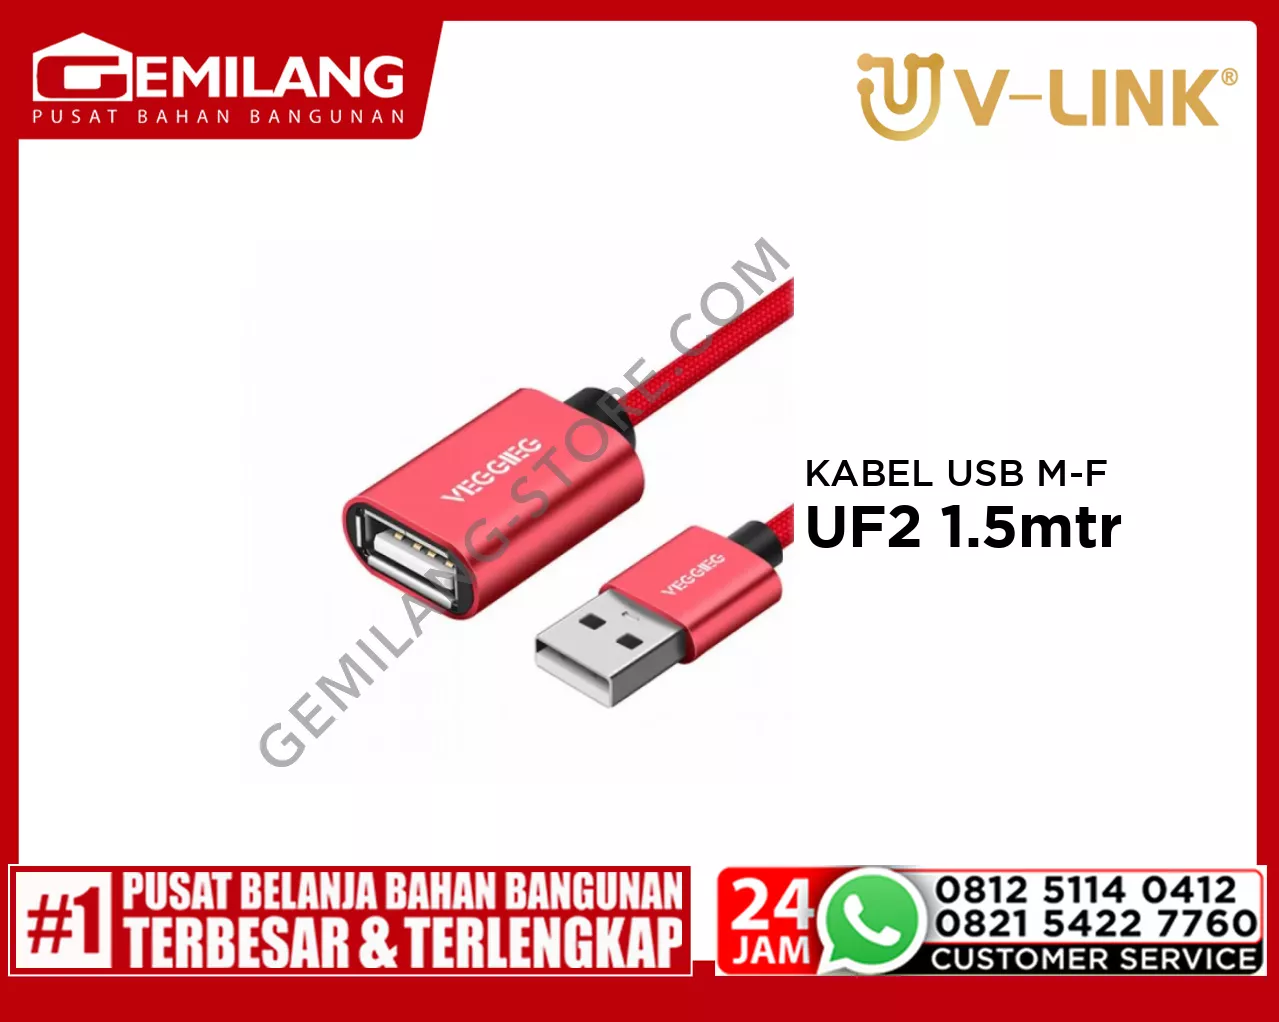 V-LINK KABEL USB MALE TO FEMALE VEGGIEG UF2 1.5mtr